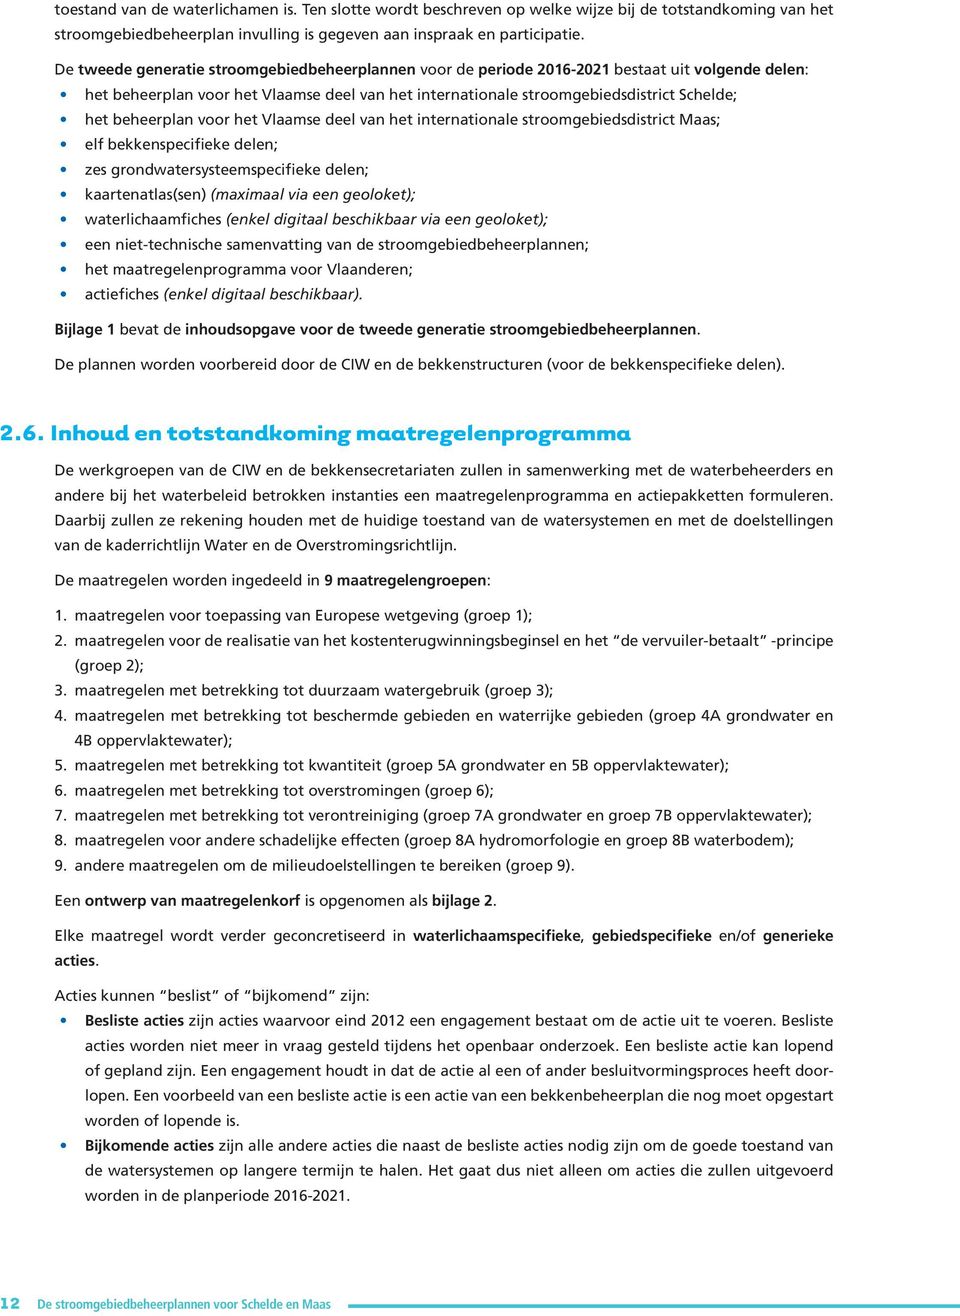 beheerplan voor het Vlaamse deel van het internationale stroomgebiedsdistrict Maas; elf bekkenspecifieke delen; zes grondwatersysteemspecifieke delen; kaartenatlas(sen) (maximaal via een geoloket);